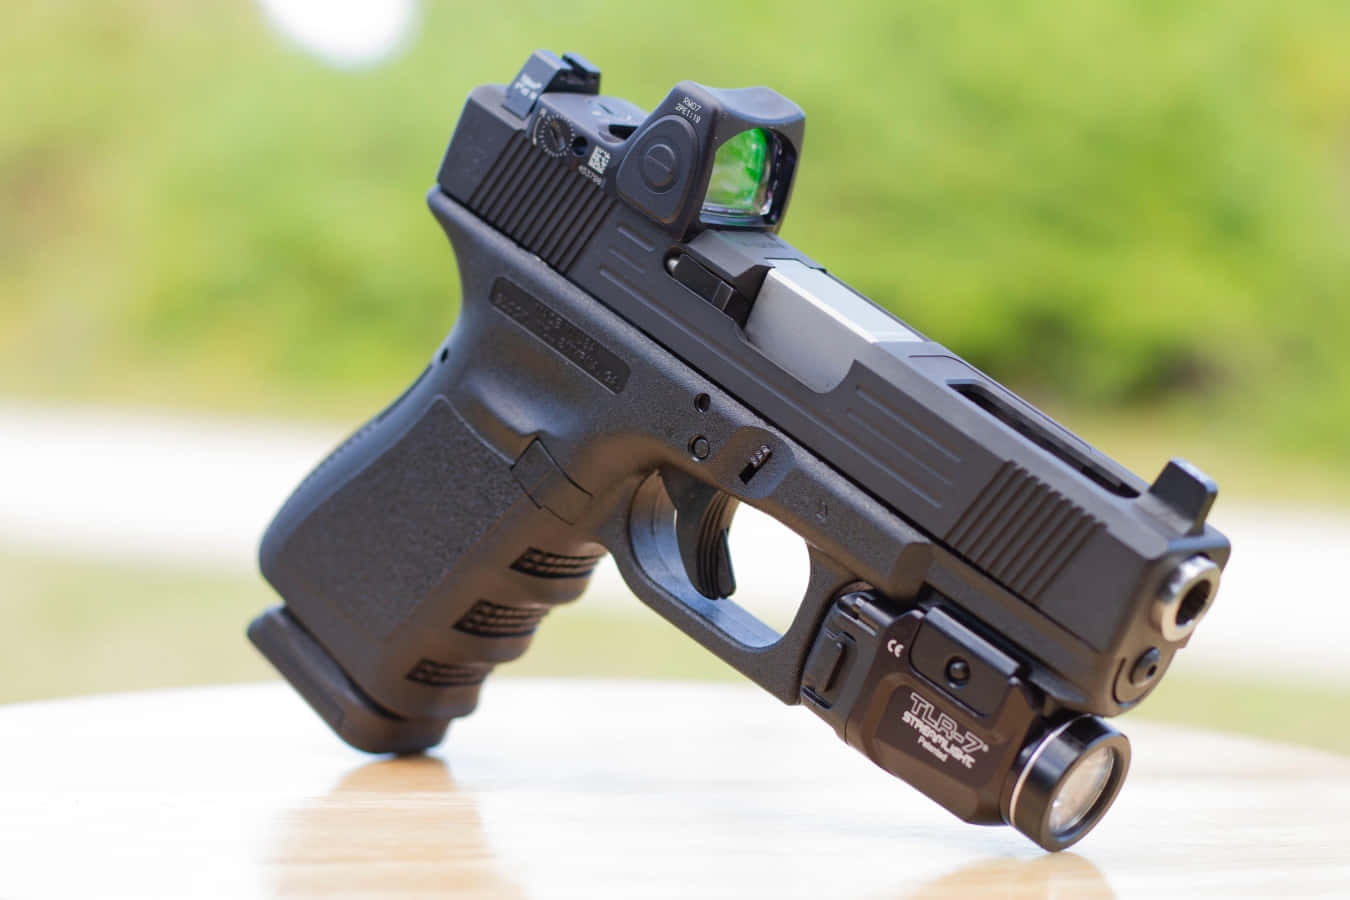 The iconic Glock 19 pistol.